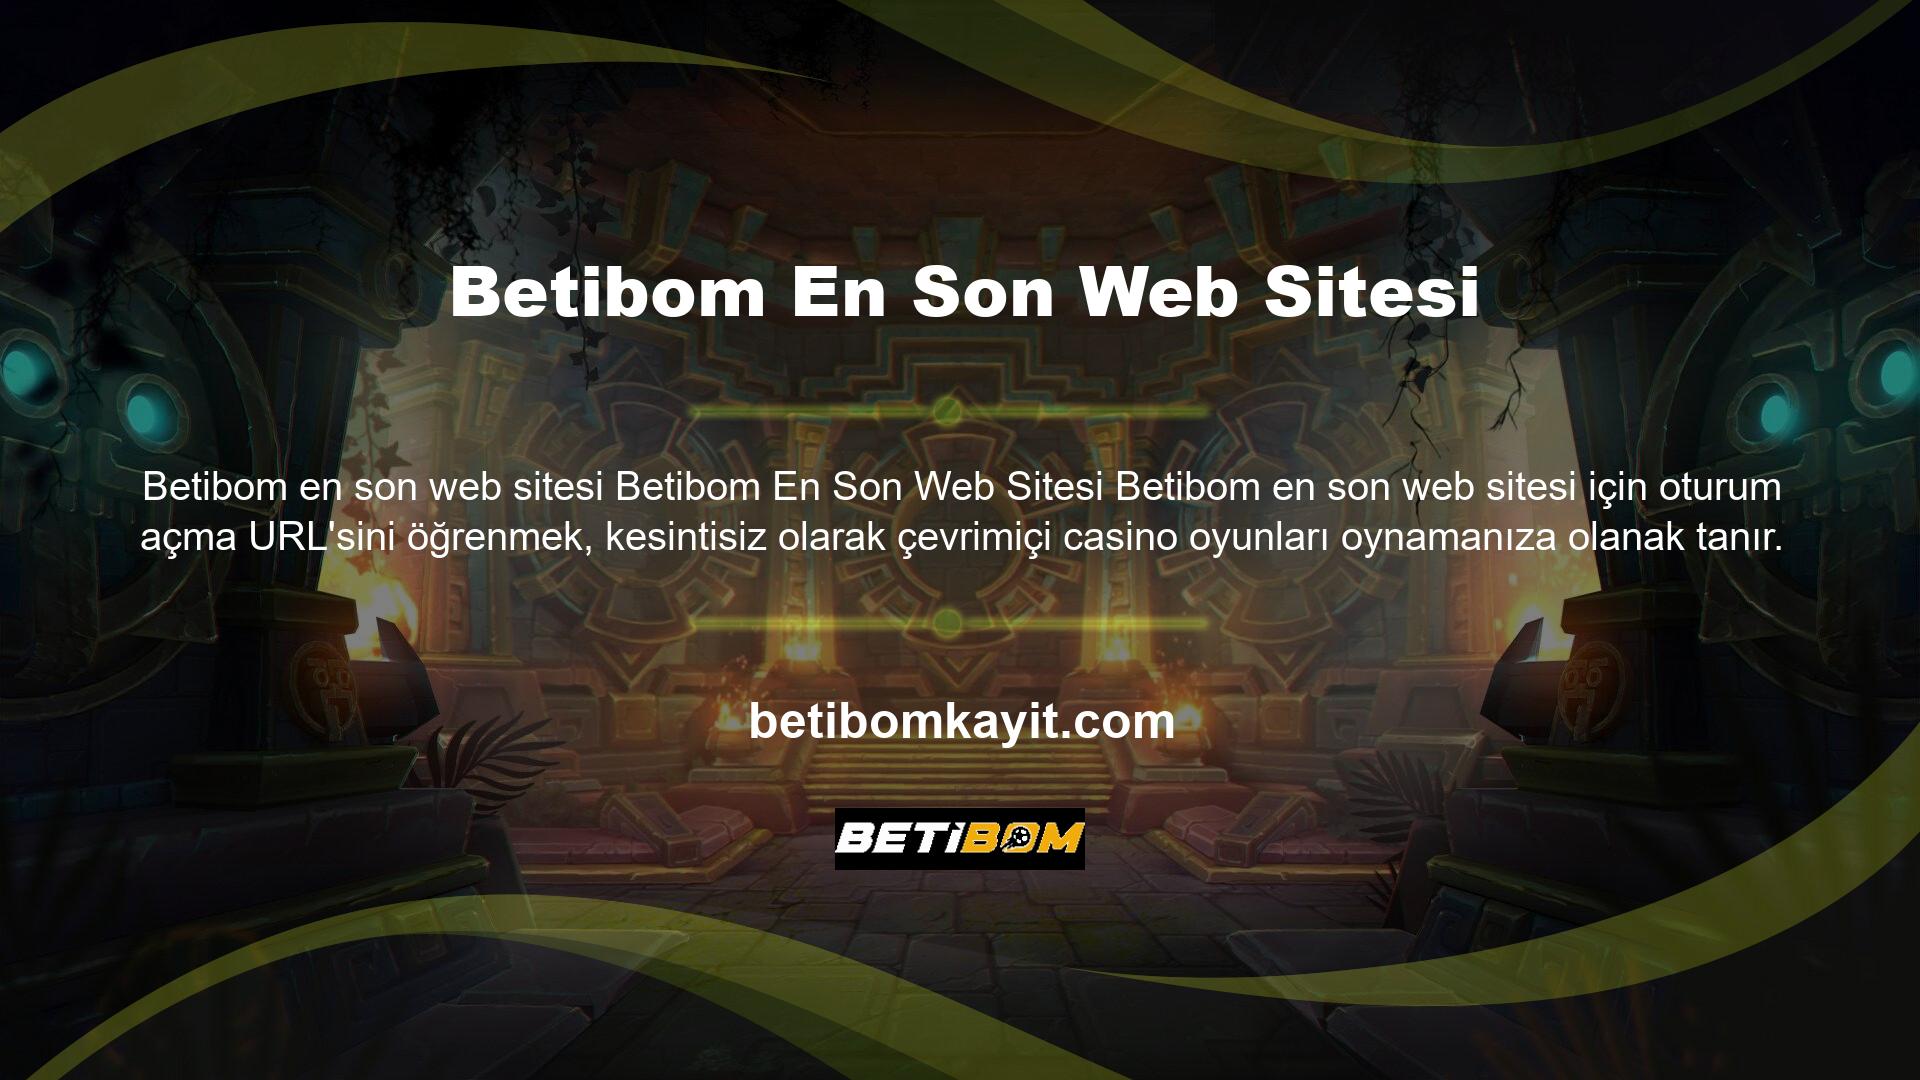 Yeni giriş URL'nizi bilmiyorsanız, siteye giriş yapamayacak ve çevrimiçi casino oynayamayacaksınız